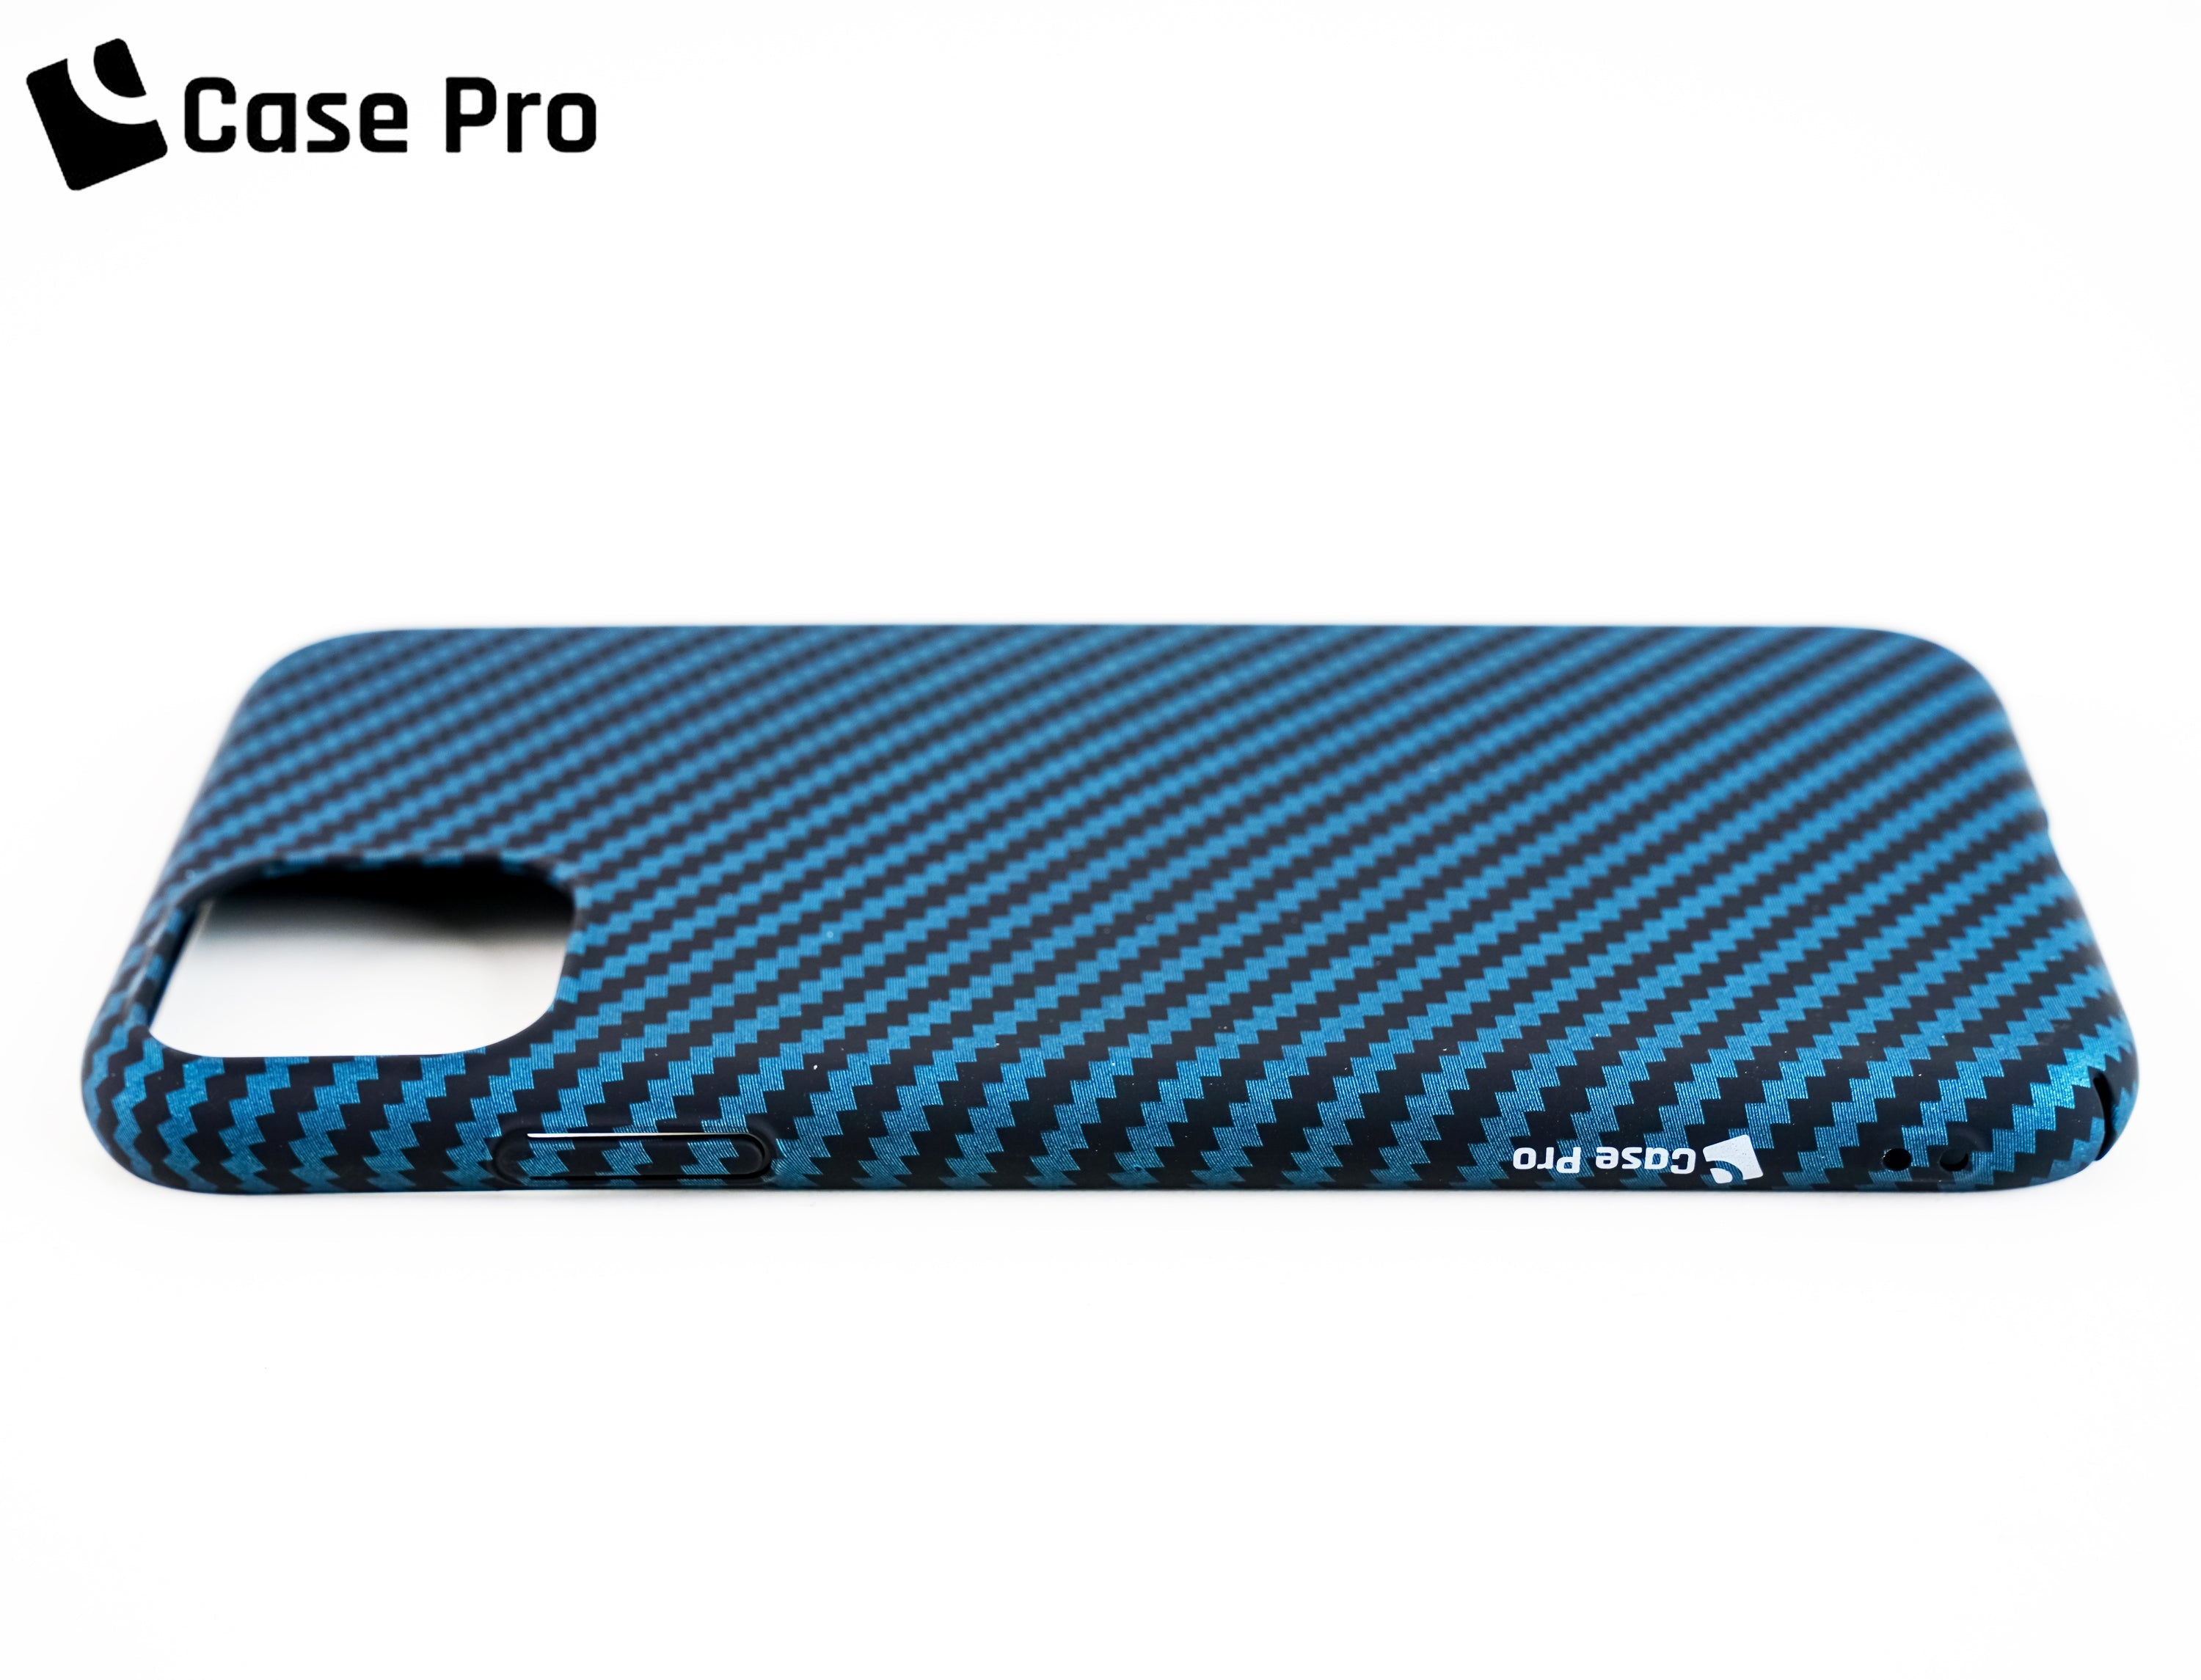 CASE PRO iPhone 11 Pro Max Case (Carbon Pro)